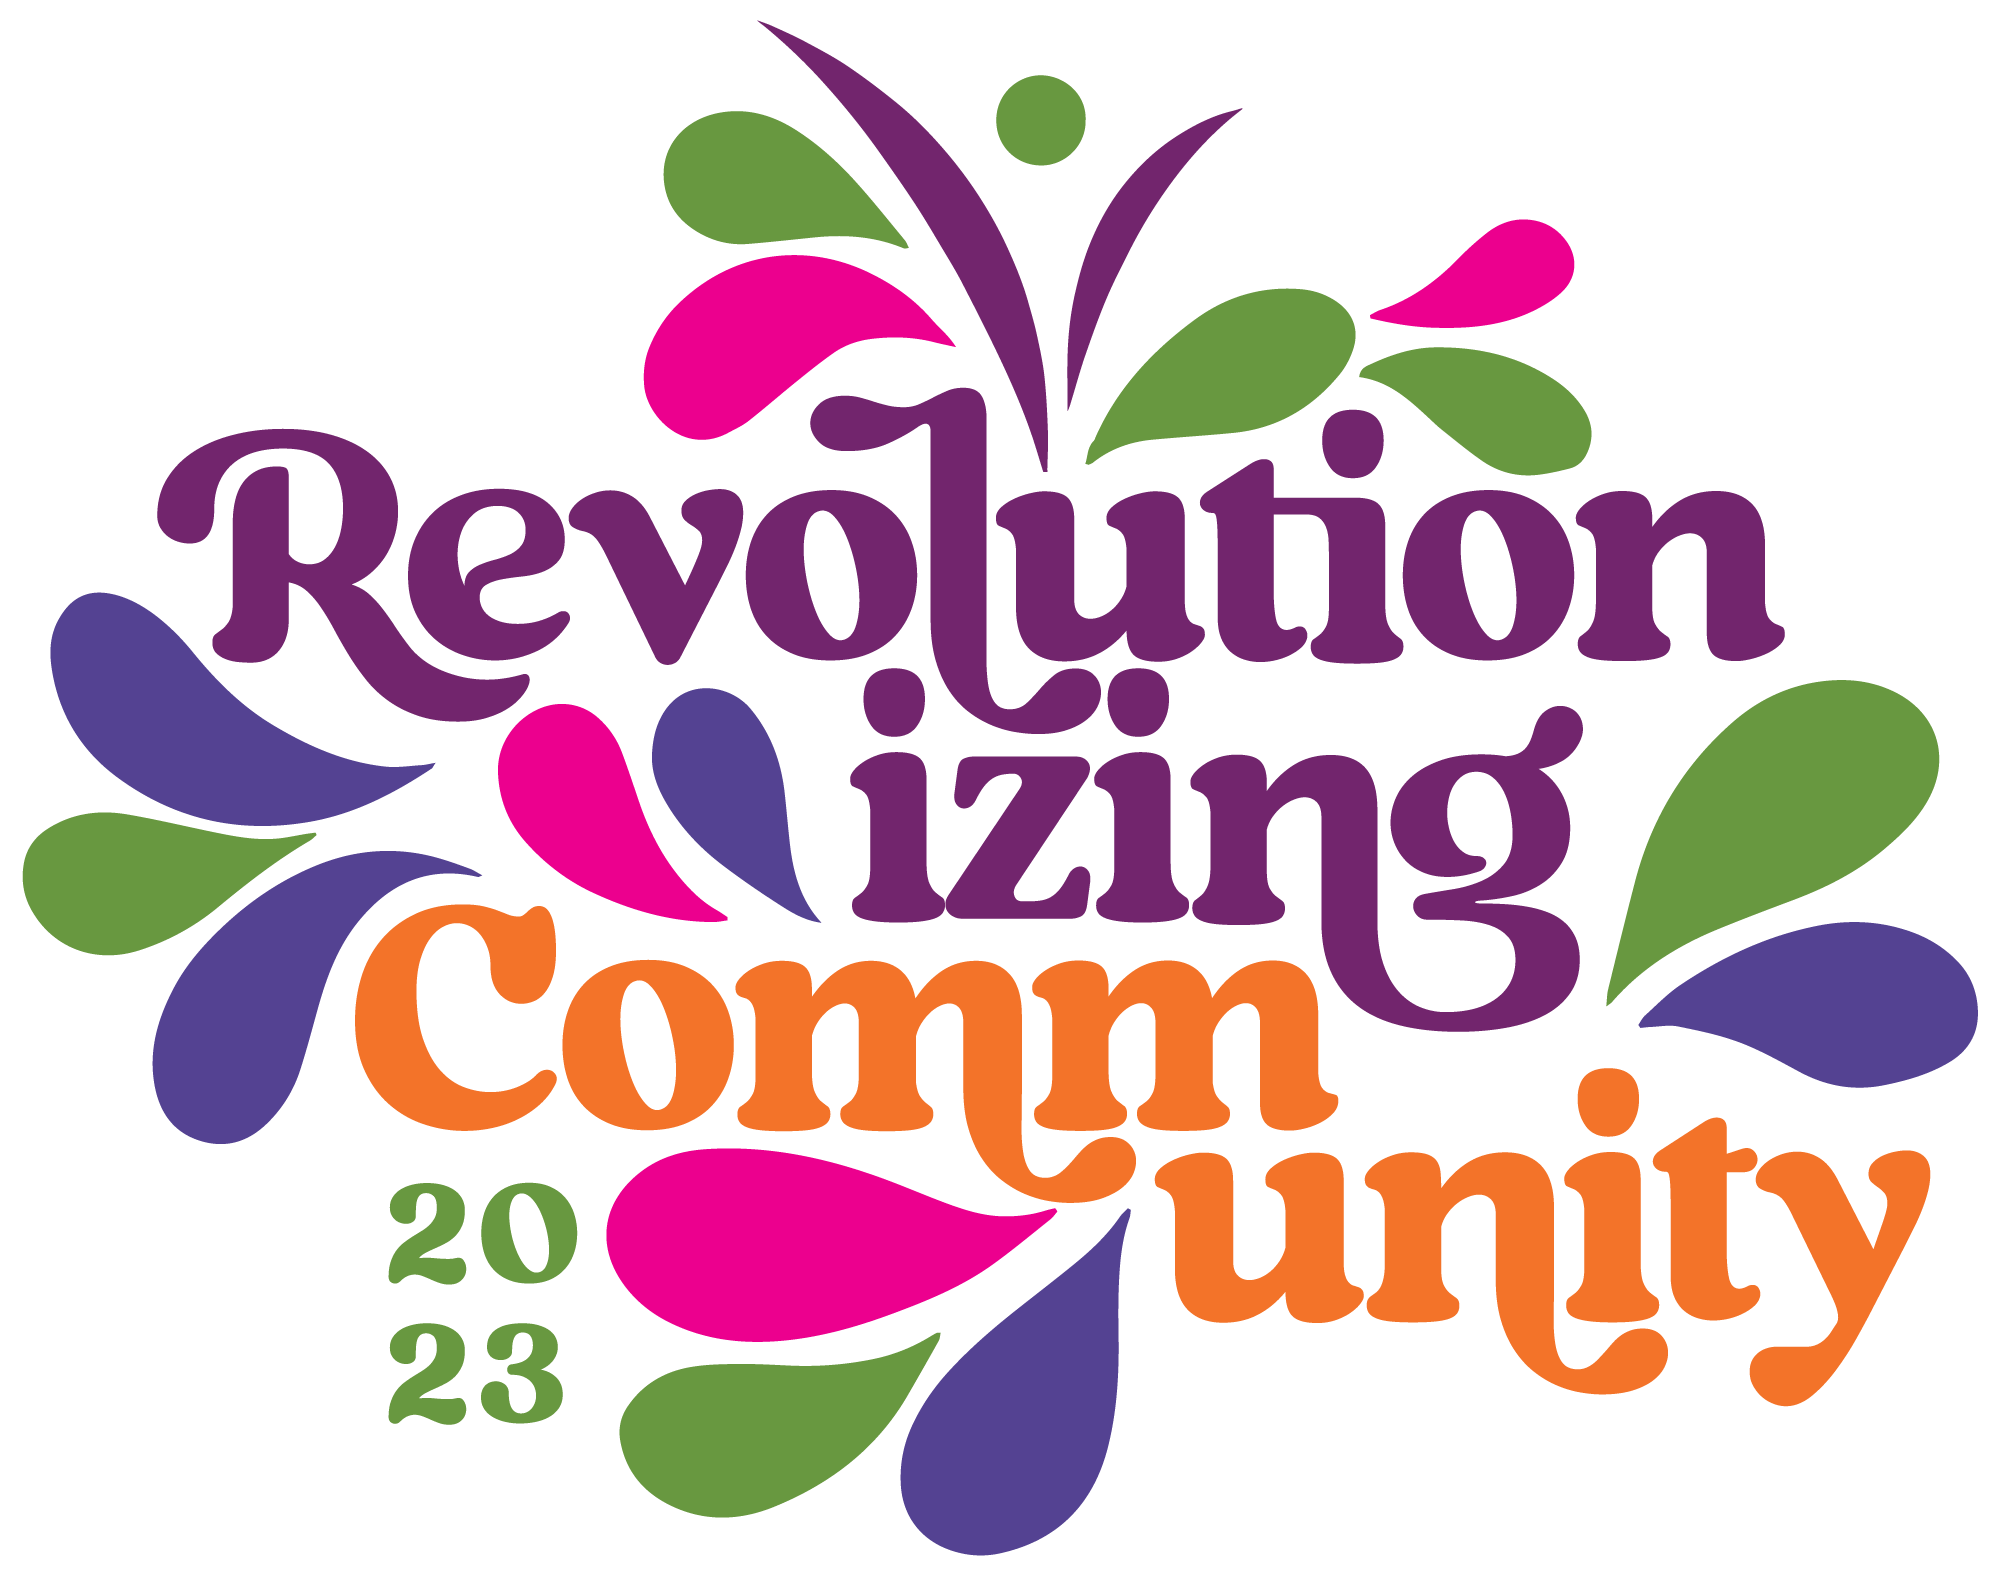 Revolutionizing-Community-Logo-FINAL